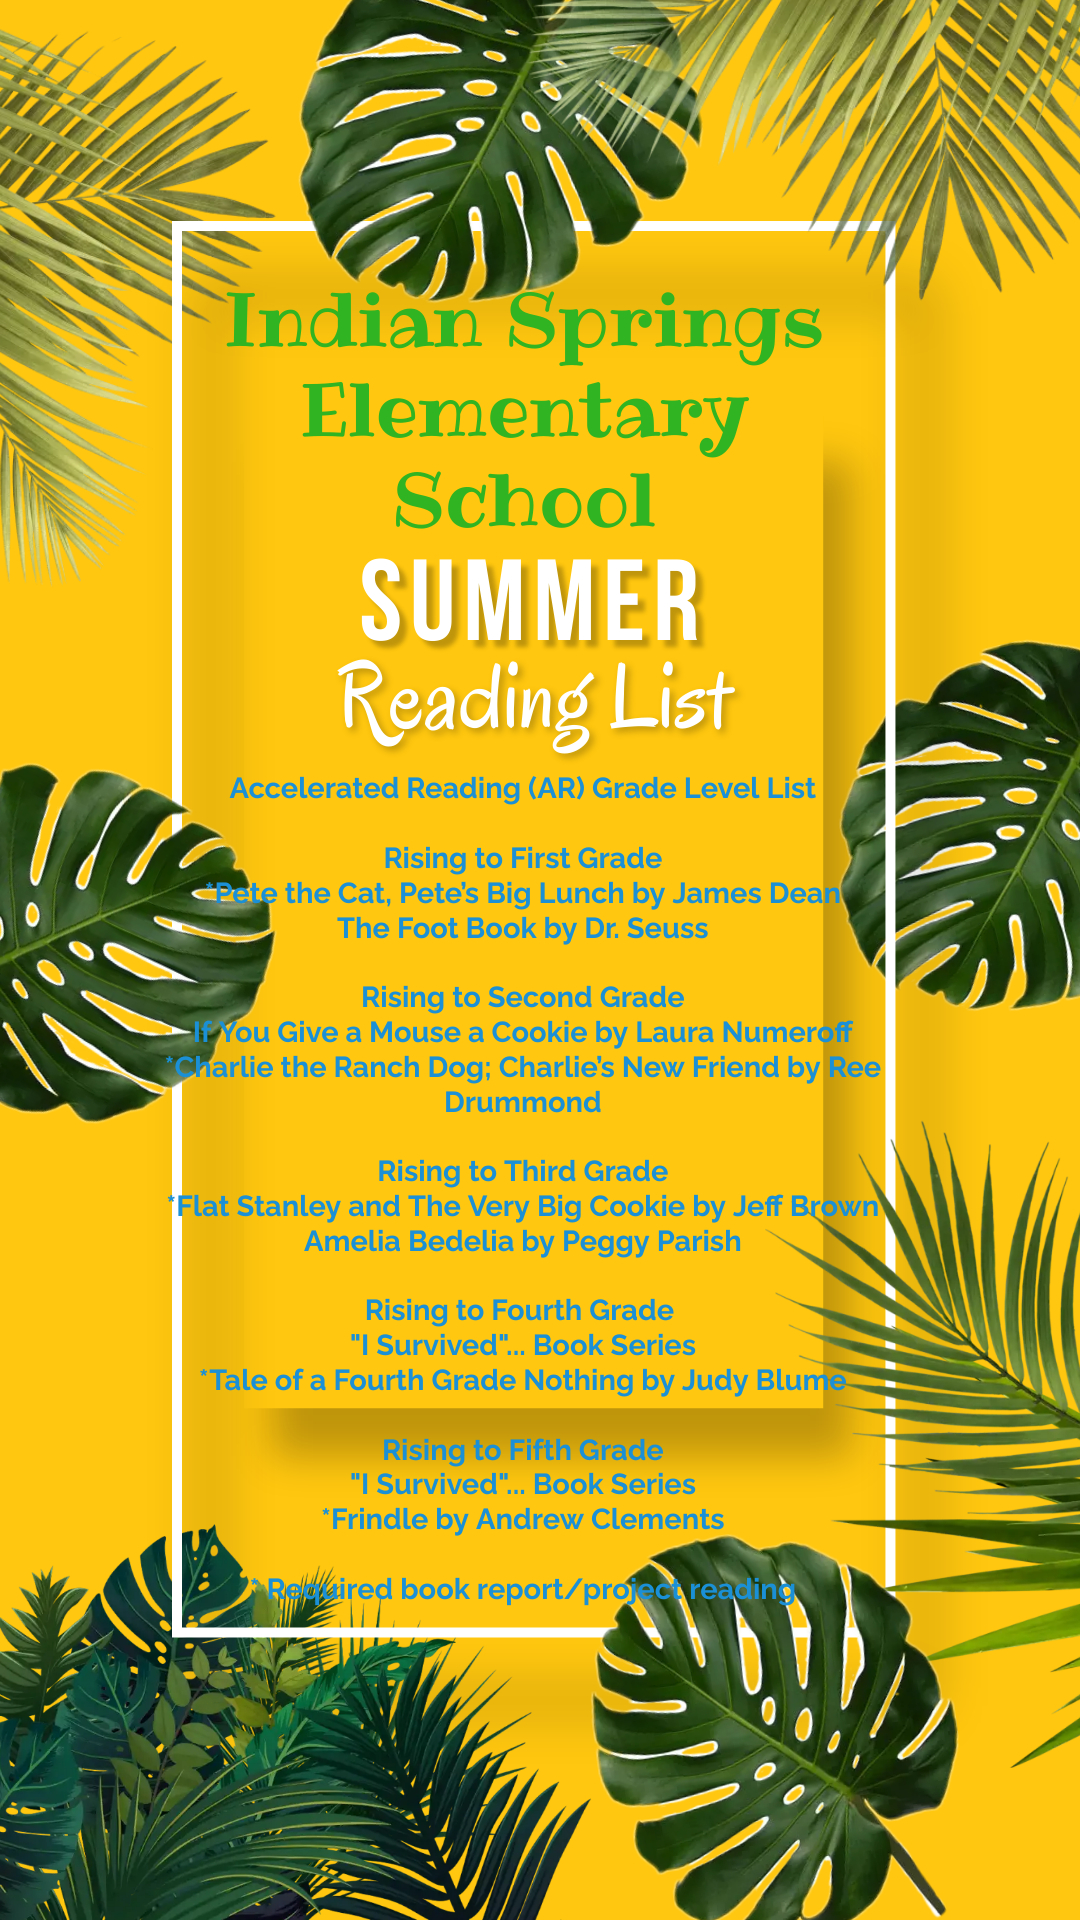 List of Summer Reading Books